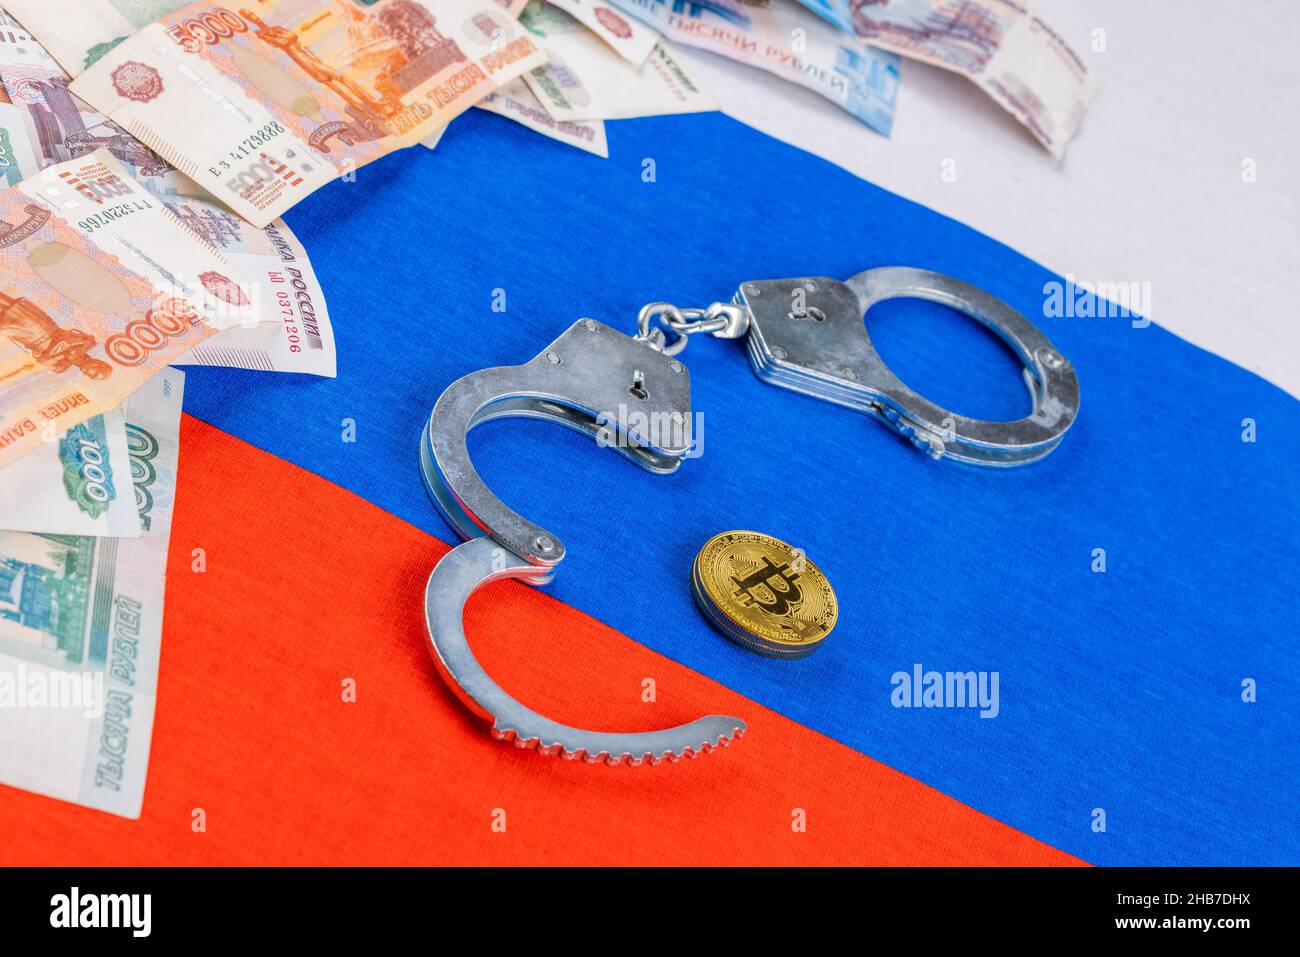 pila de papel ruso rublos moneda y moneda de bitcoin shiner encadenado con esposas en el fondo de la bandera rusa - cripto prohibición concepto de ley Foto de stock